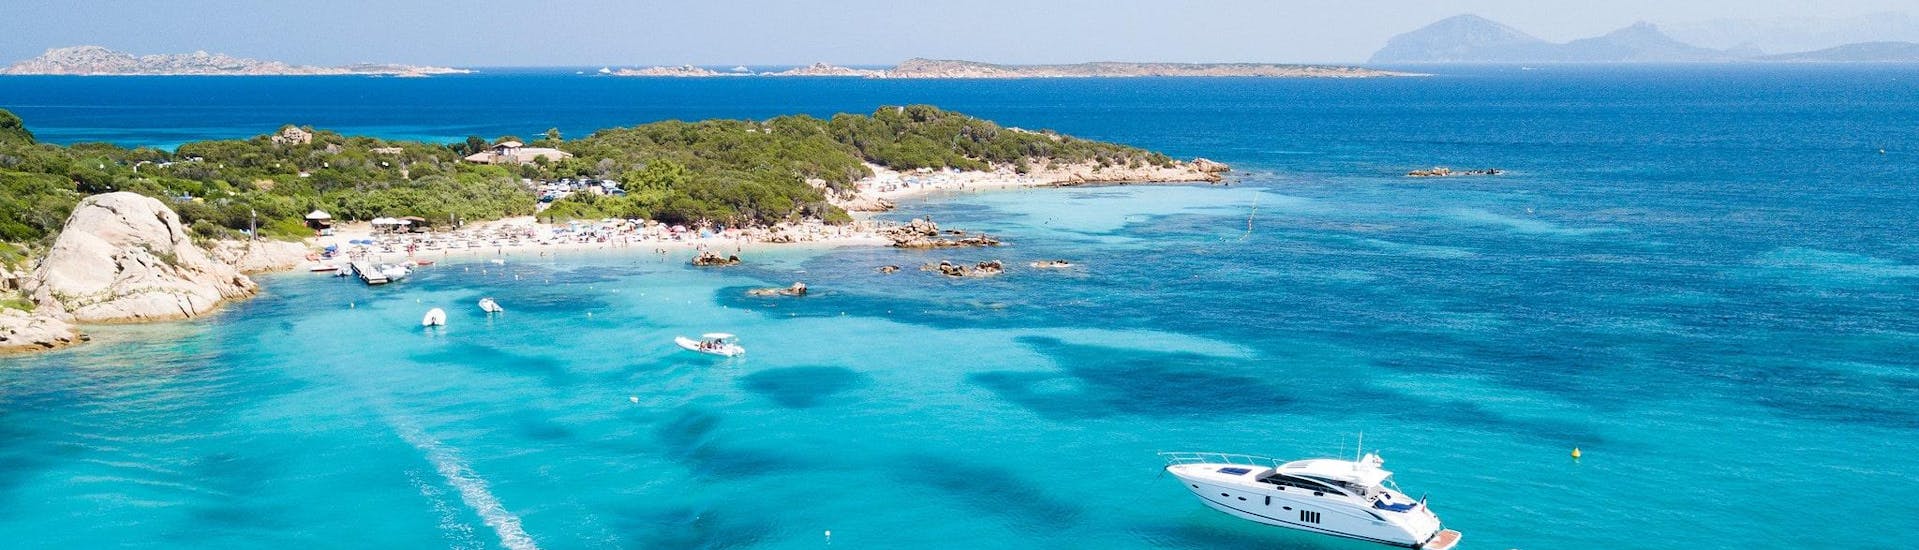 Blick auf zwei Boote, die entlang der Costa Smeralda fahren, wo viele Bootstouren in Sardinien stattfinden.